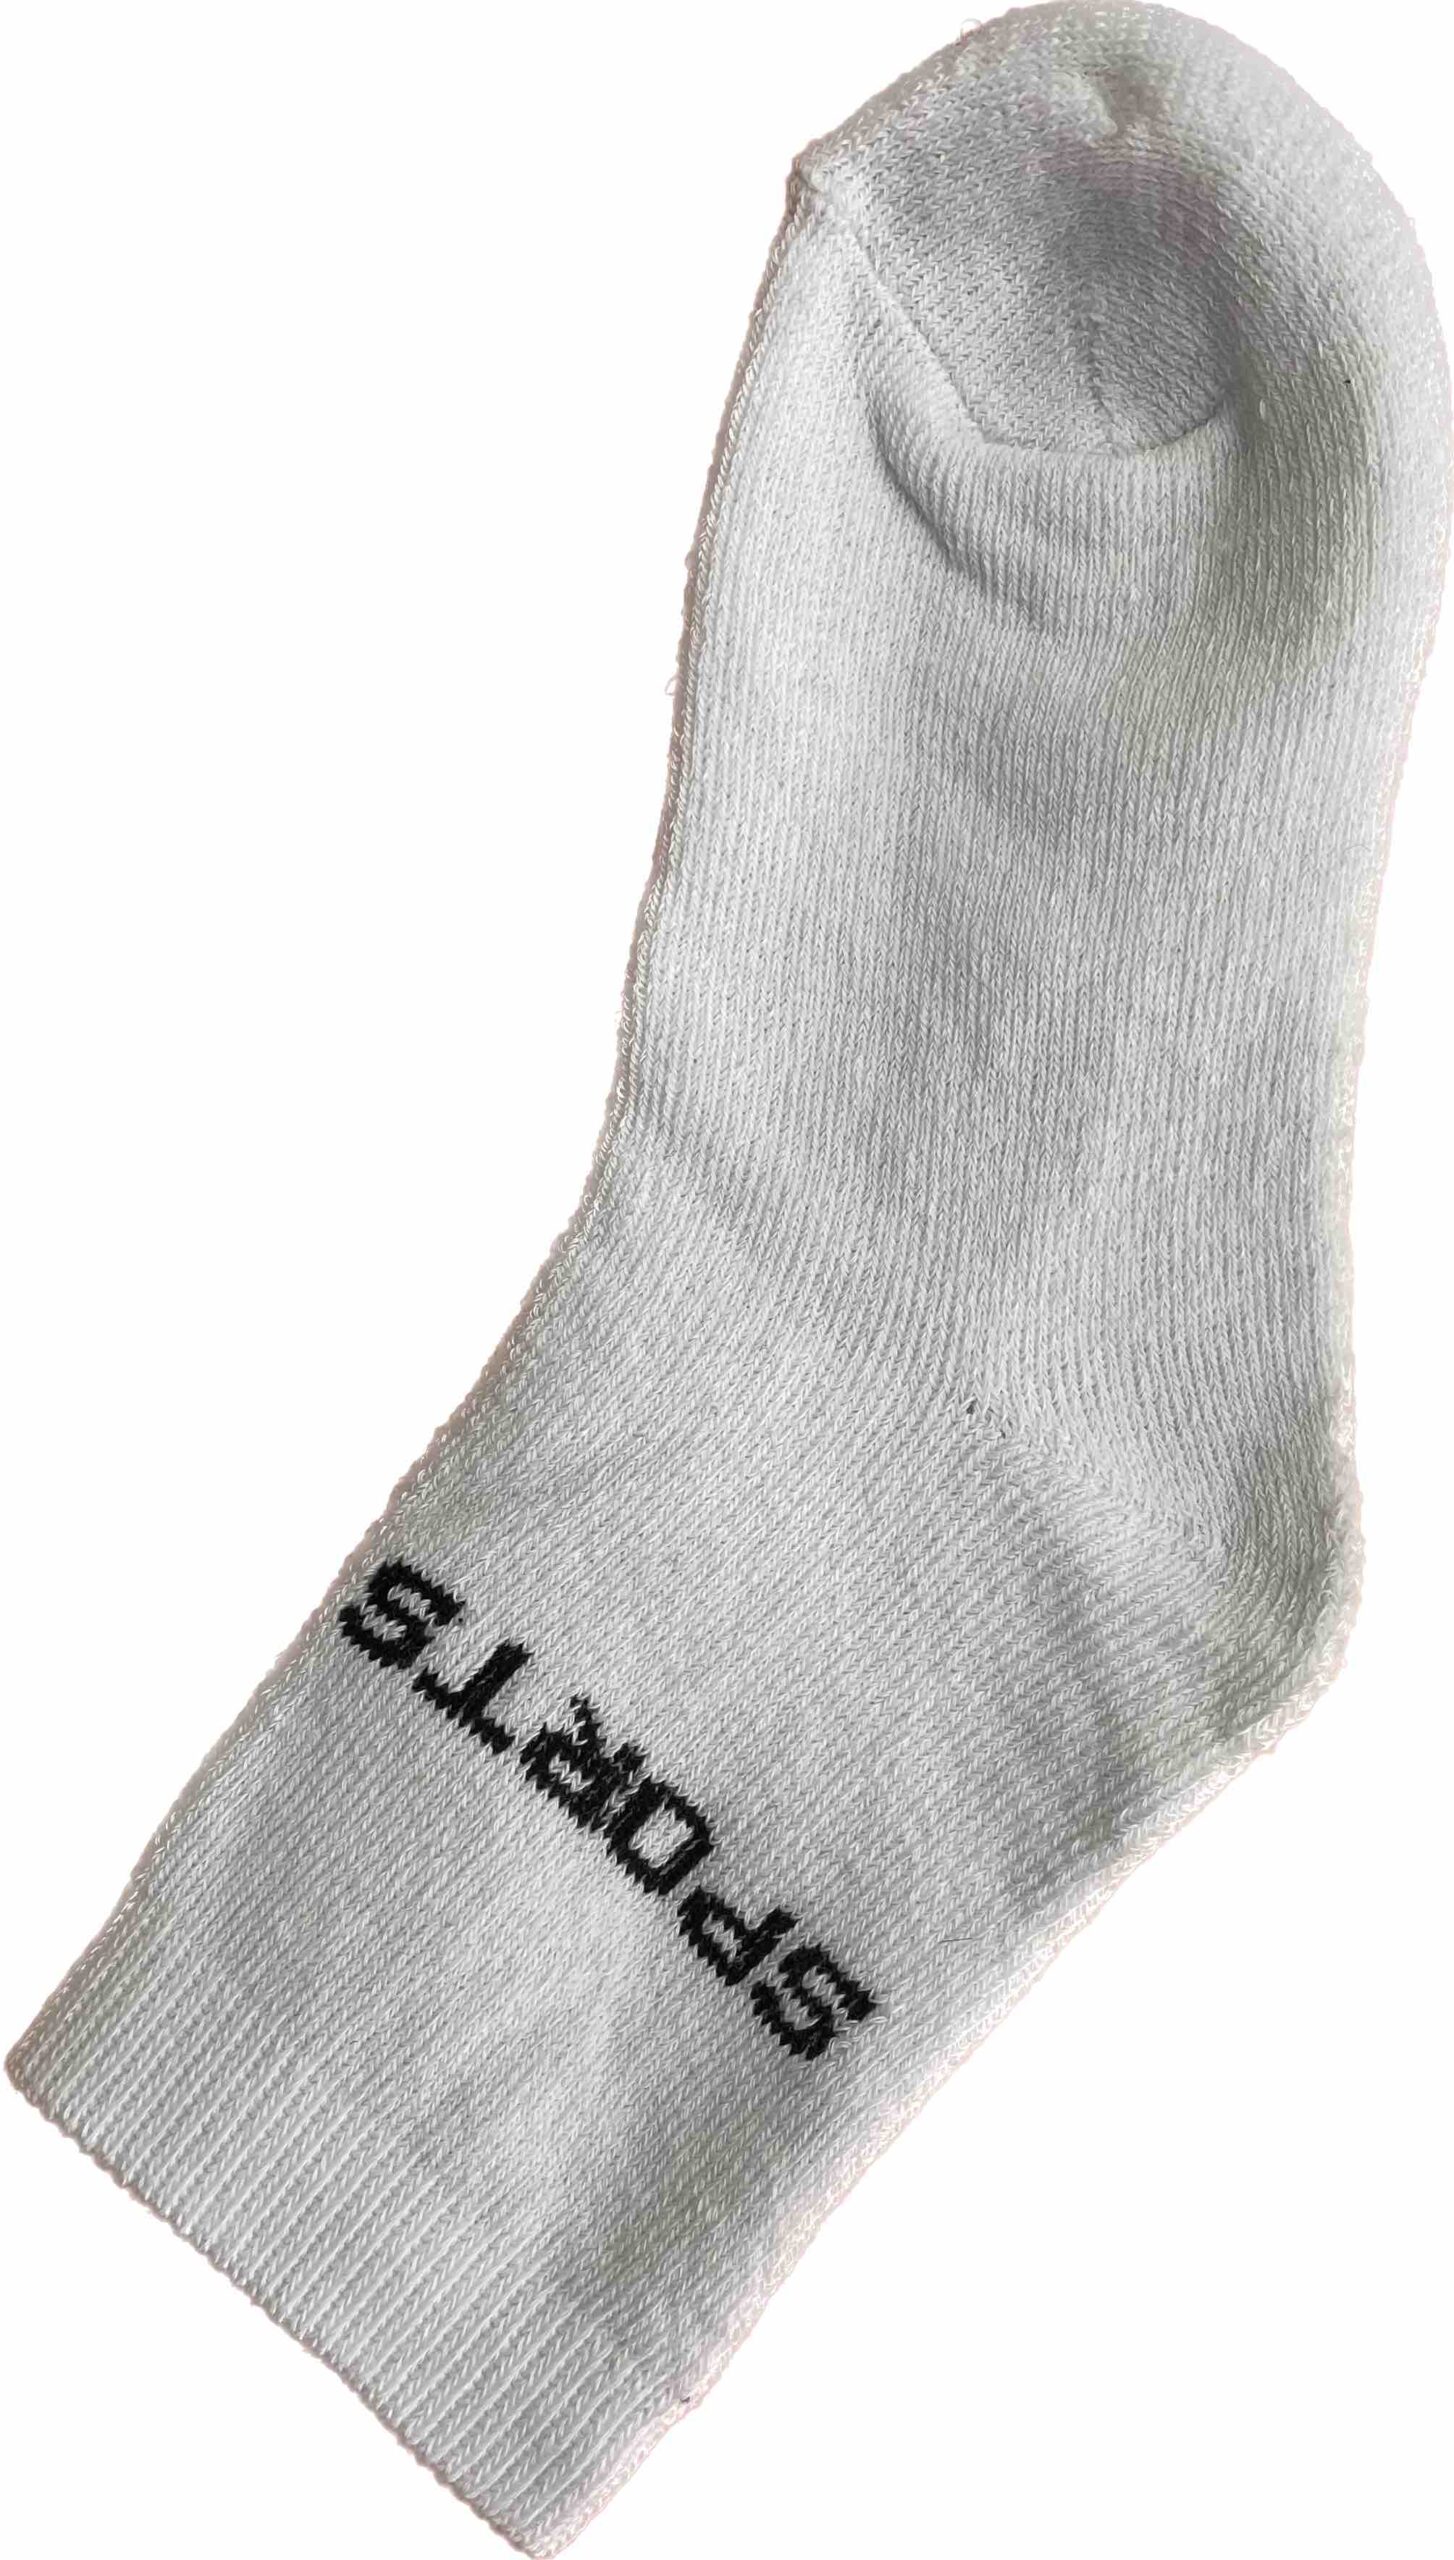 Κάλτσες σε χρώμα μαύρο , άσπρο 95 % βαμβάκι 5 % ελαστινη μέγεθος 36-40 no E1120